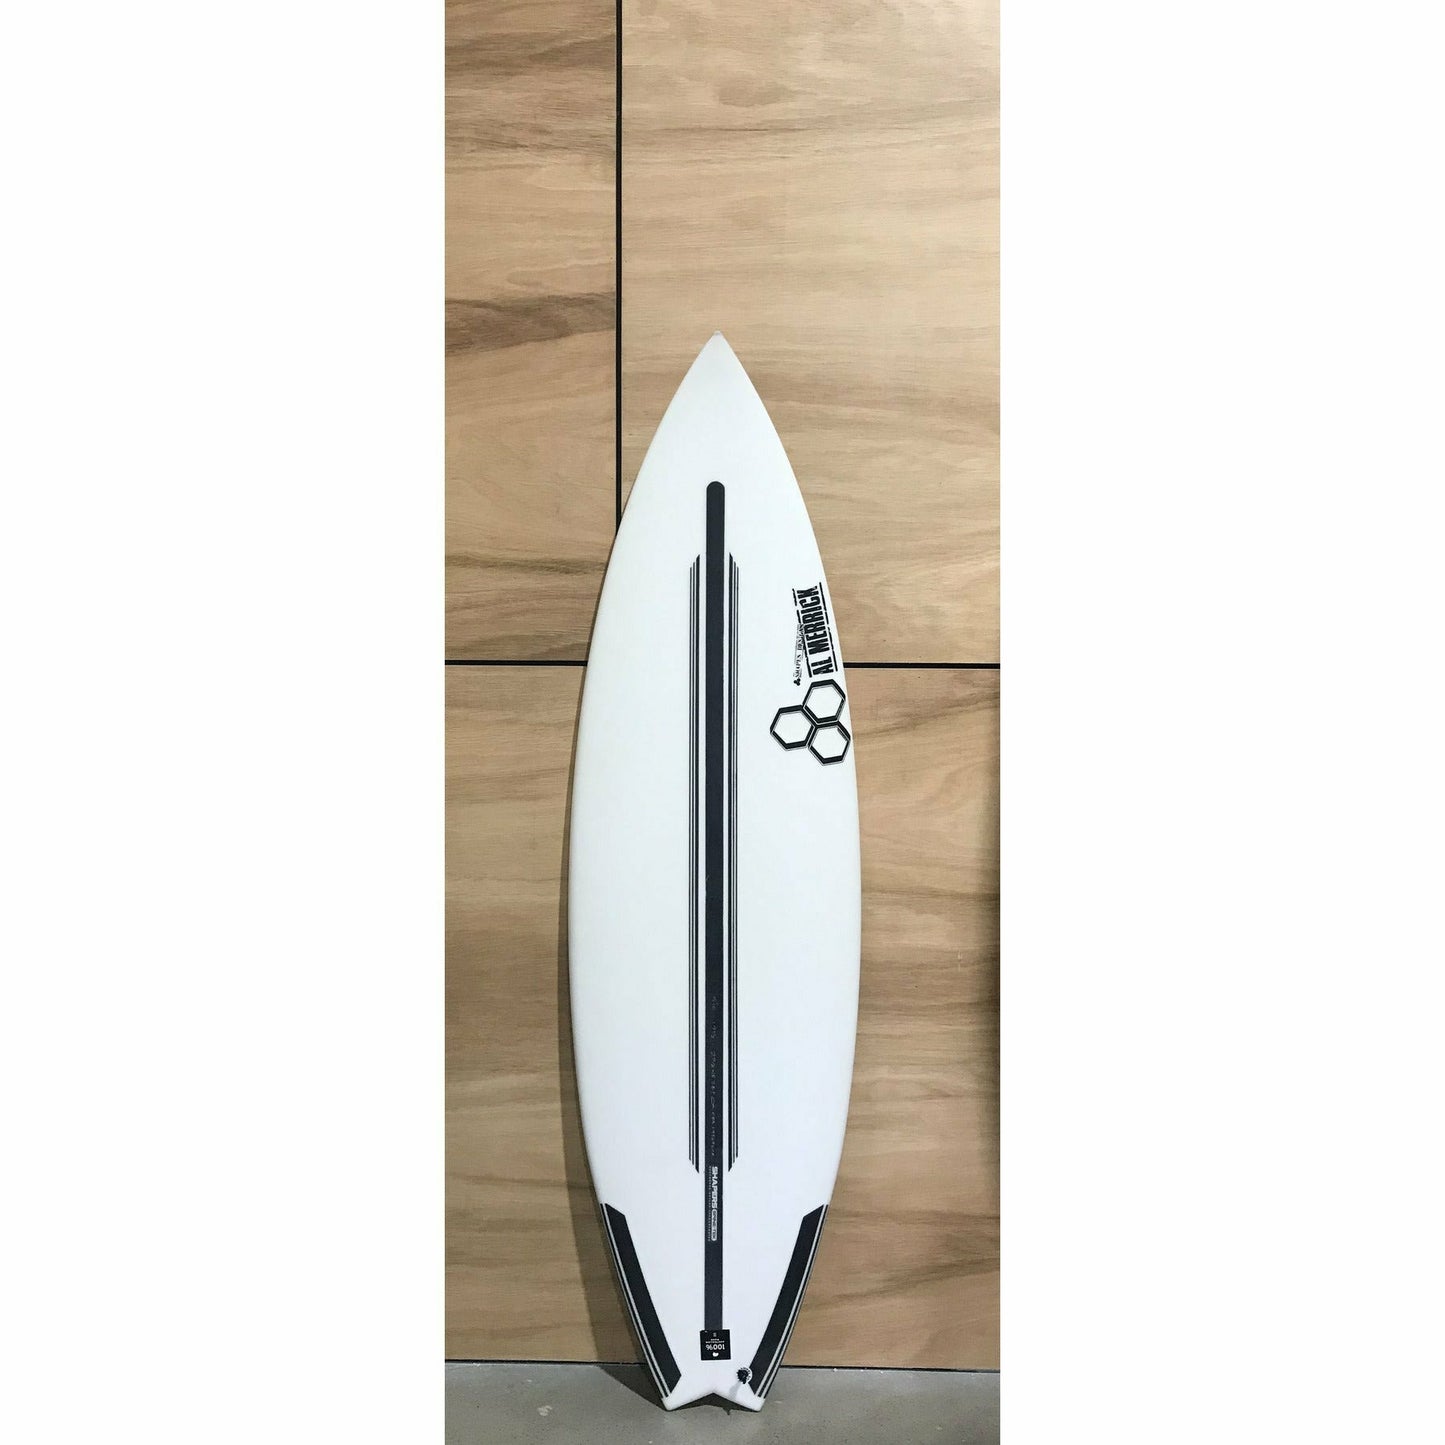 Channel Islands - Ultra Joe Surfboard